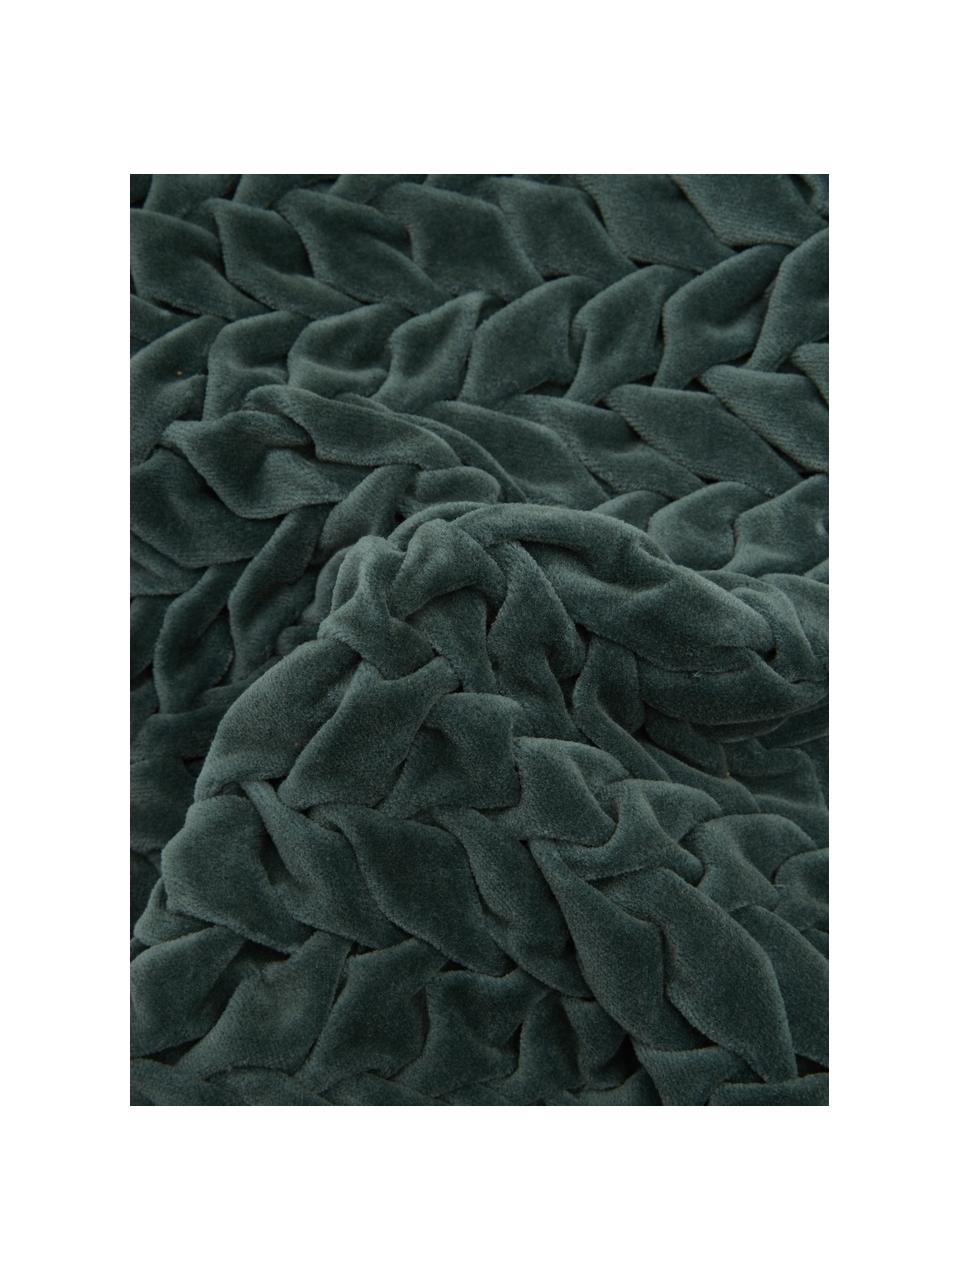 Samt-Kissen Smock in Blau-Grün mit geraffter Oberfläche, mit Inlett, Bezug: 100% Baumwollsamt, Blau-Grün, 30 x 50 cm